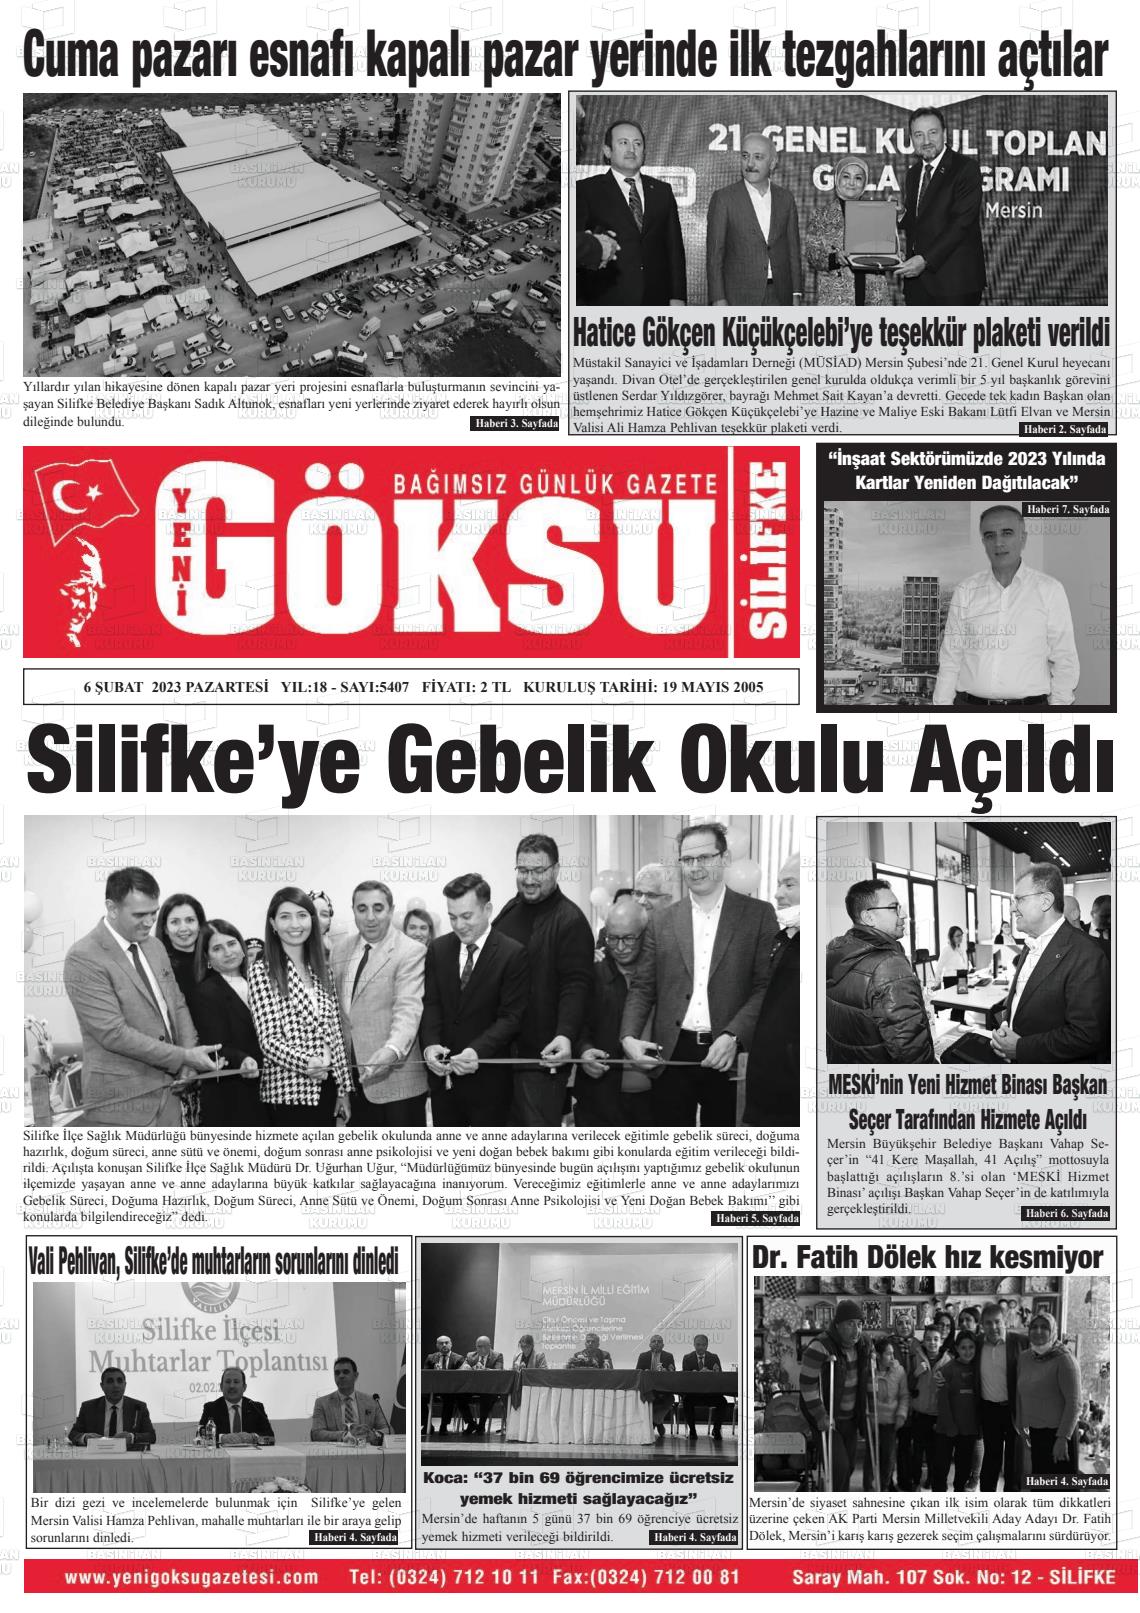 06 Şubat 2023 YENİ GÖKSU GAZETESİ Gazete Manşeti